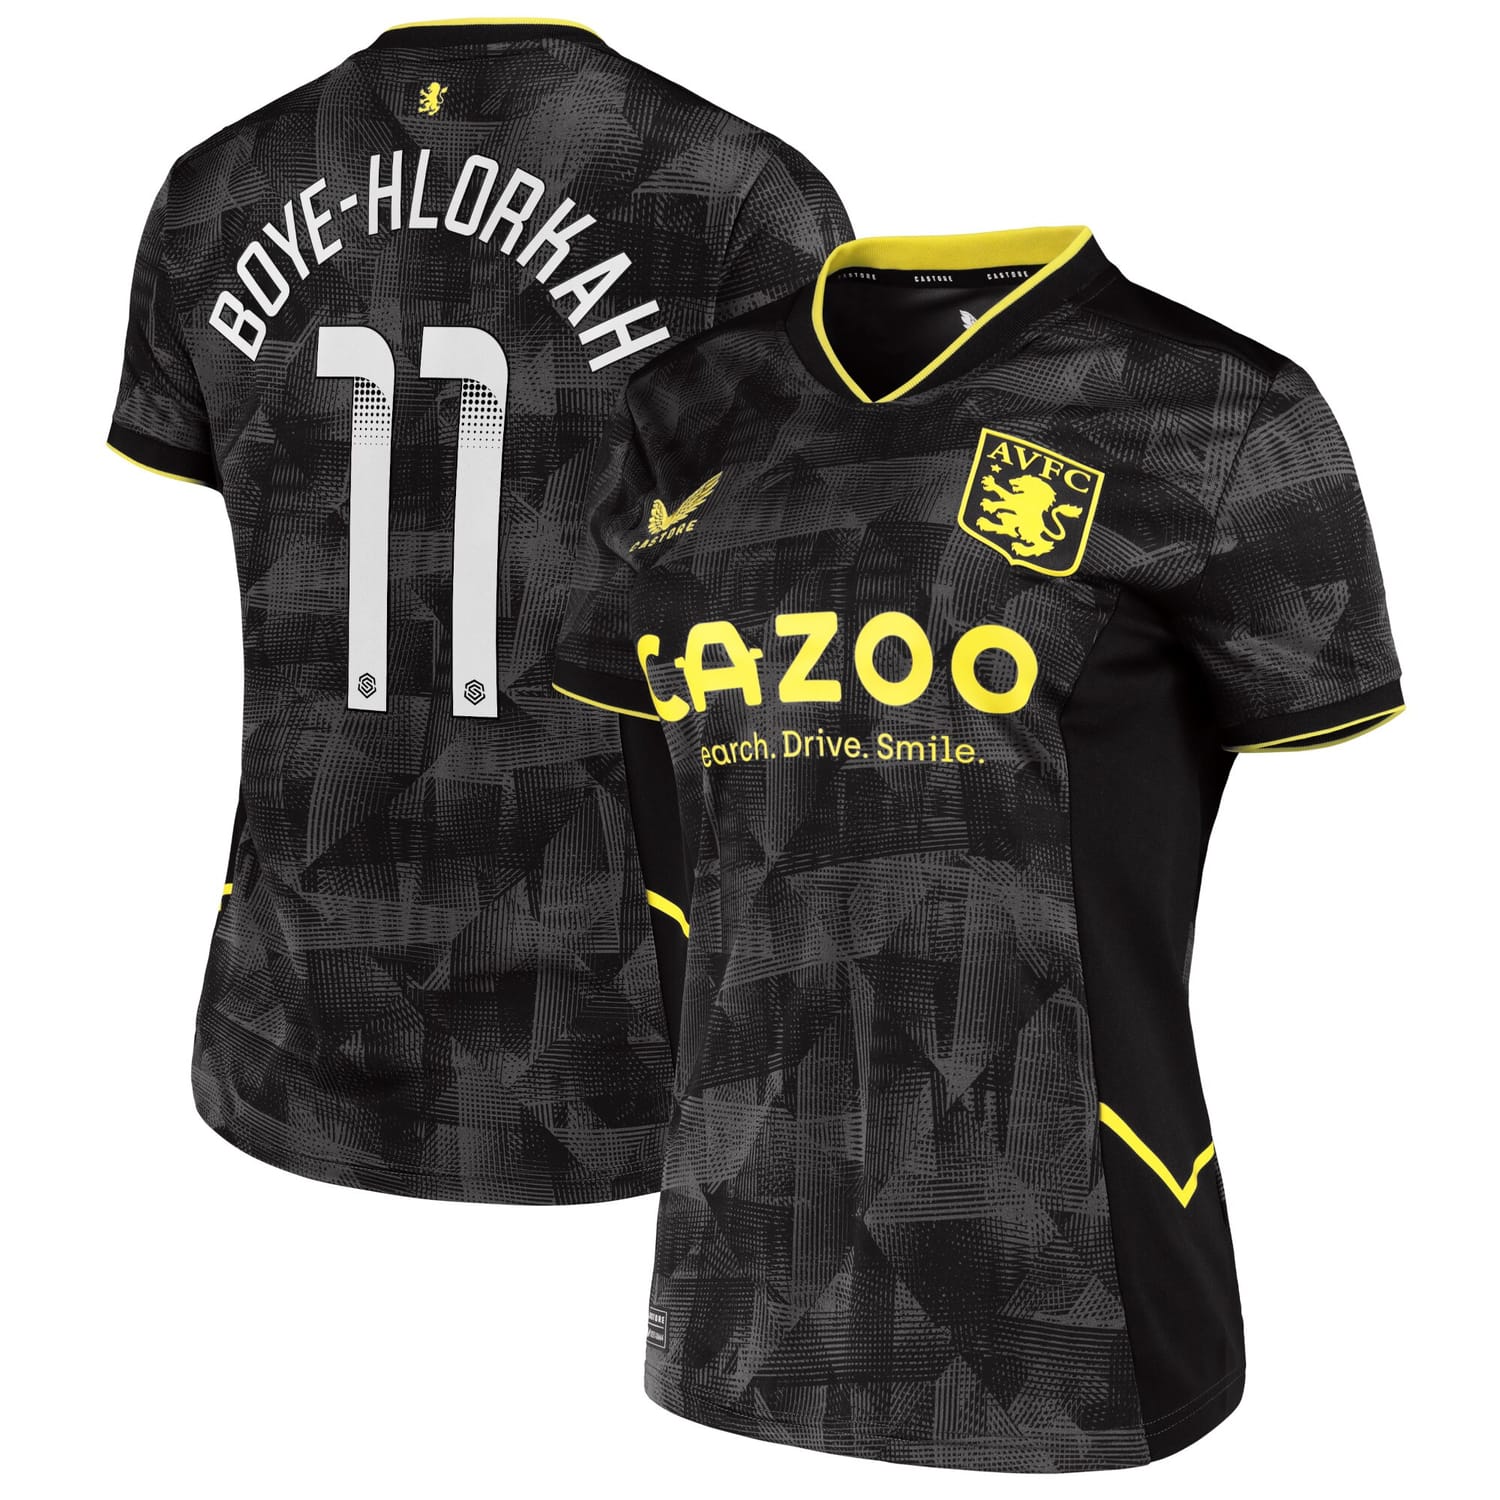 Premier League Aston Villa Third WSL Jersey Shirt 2022-23 player Chantelle Boye-Hlorkah 11 printing for Women